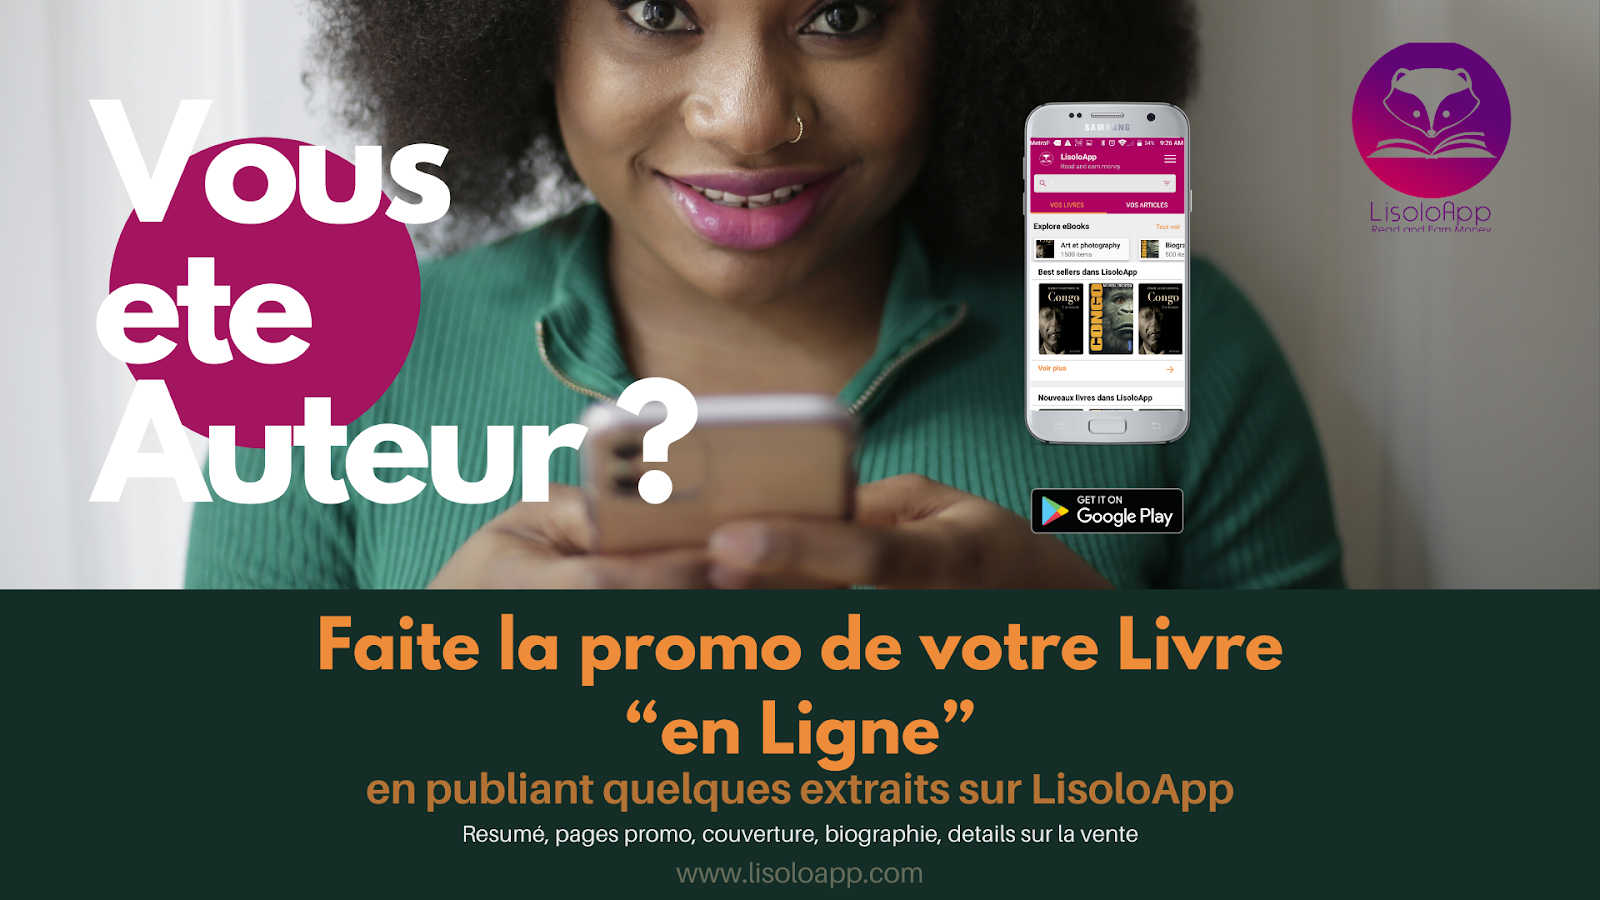 LisoloApp : promotion assurée des vos livres !